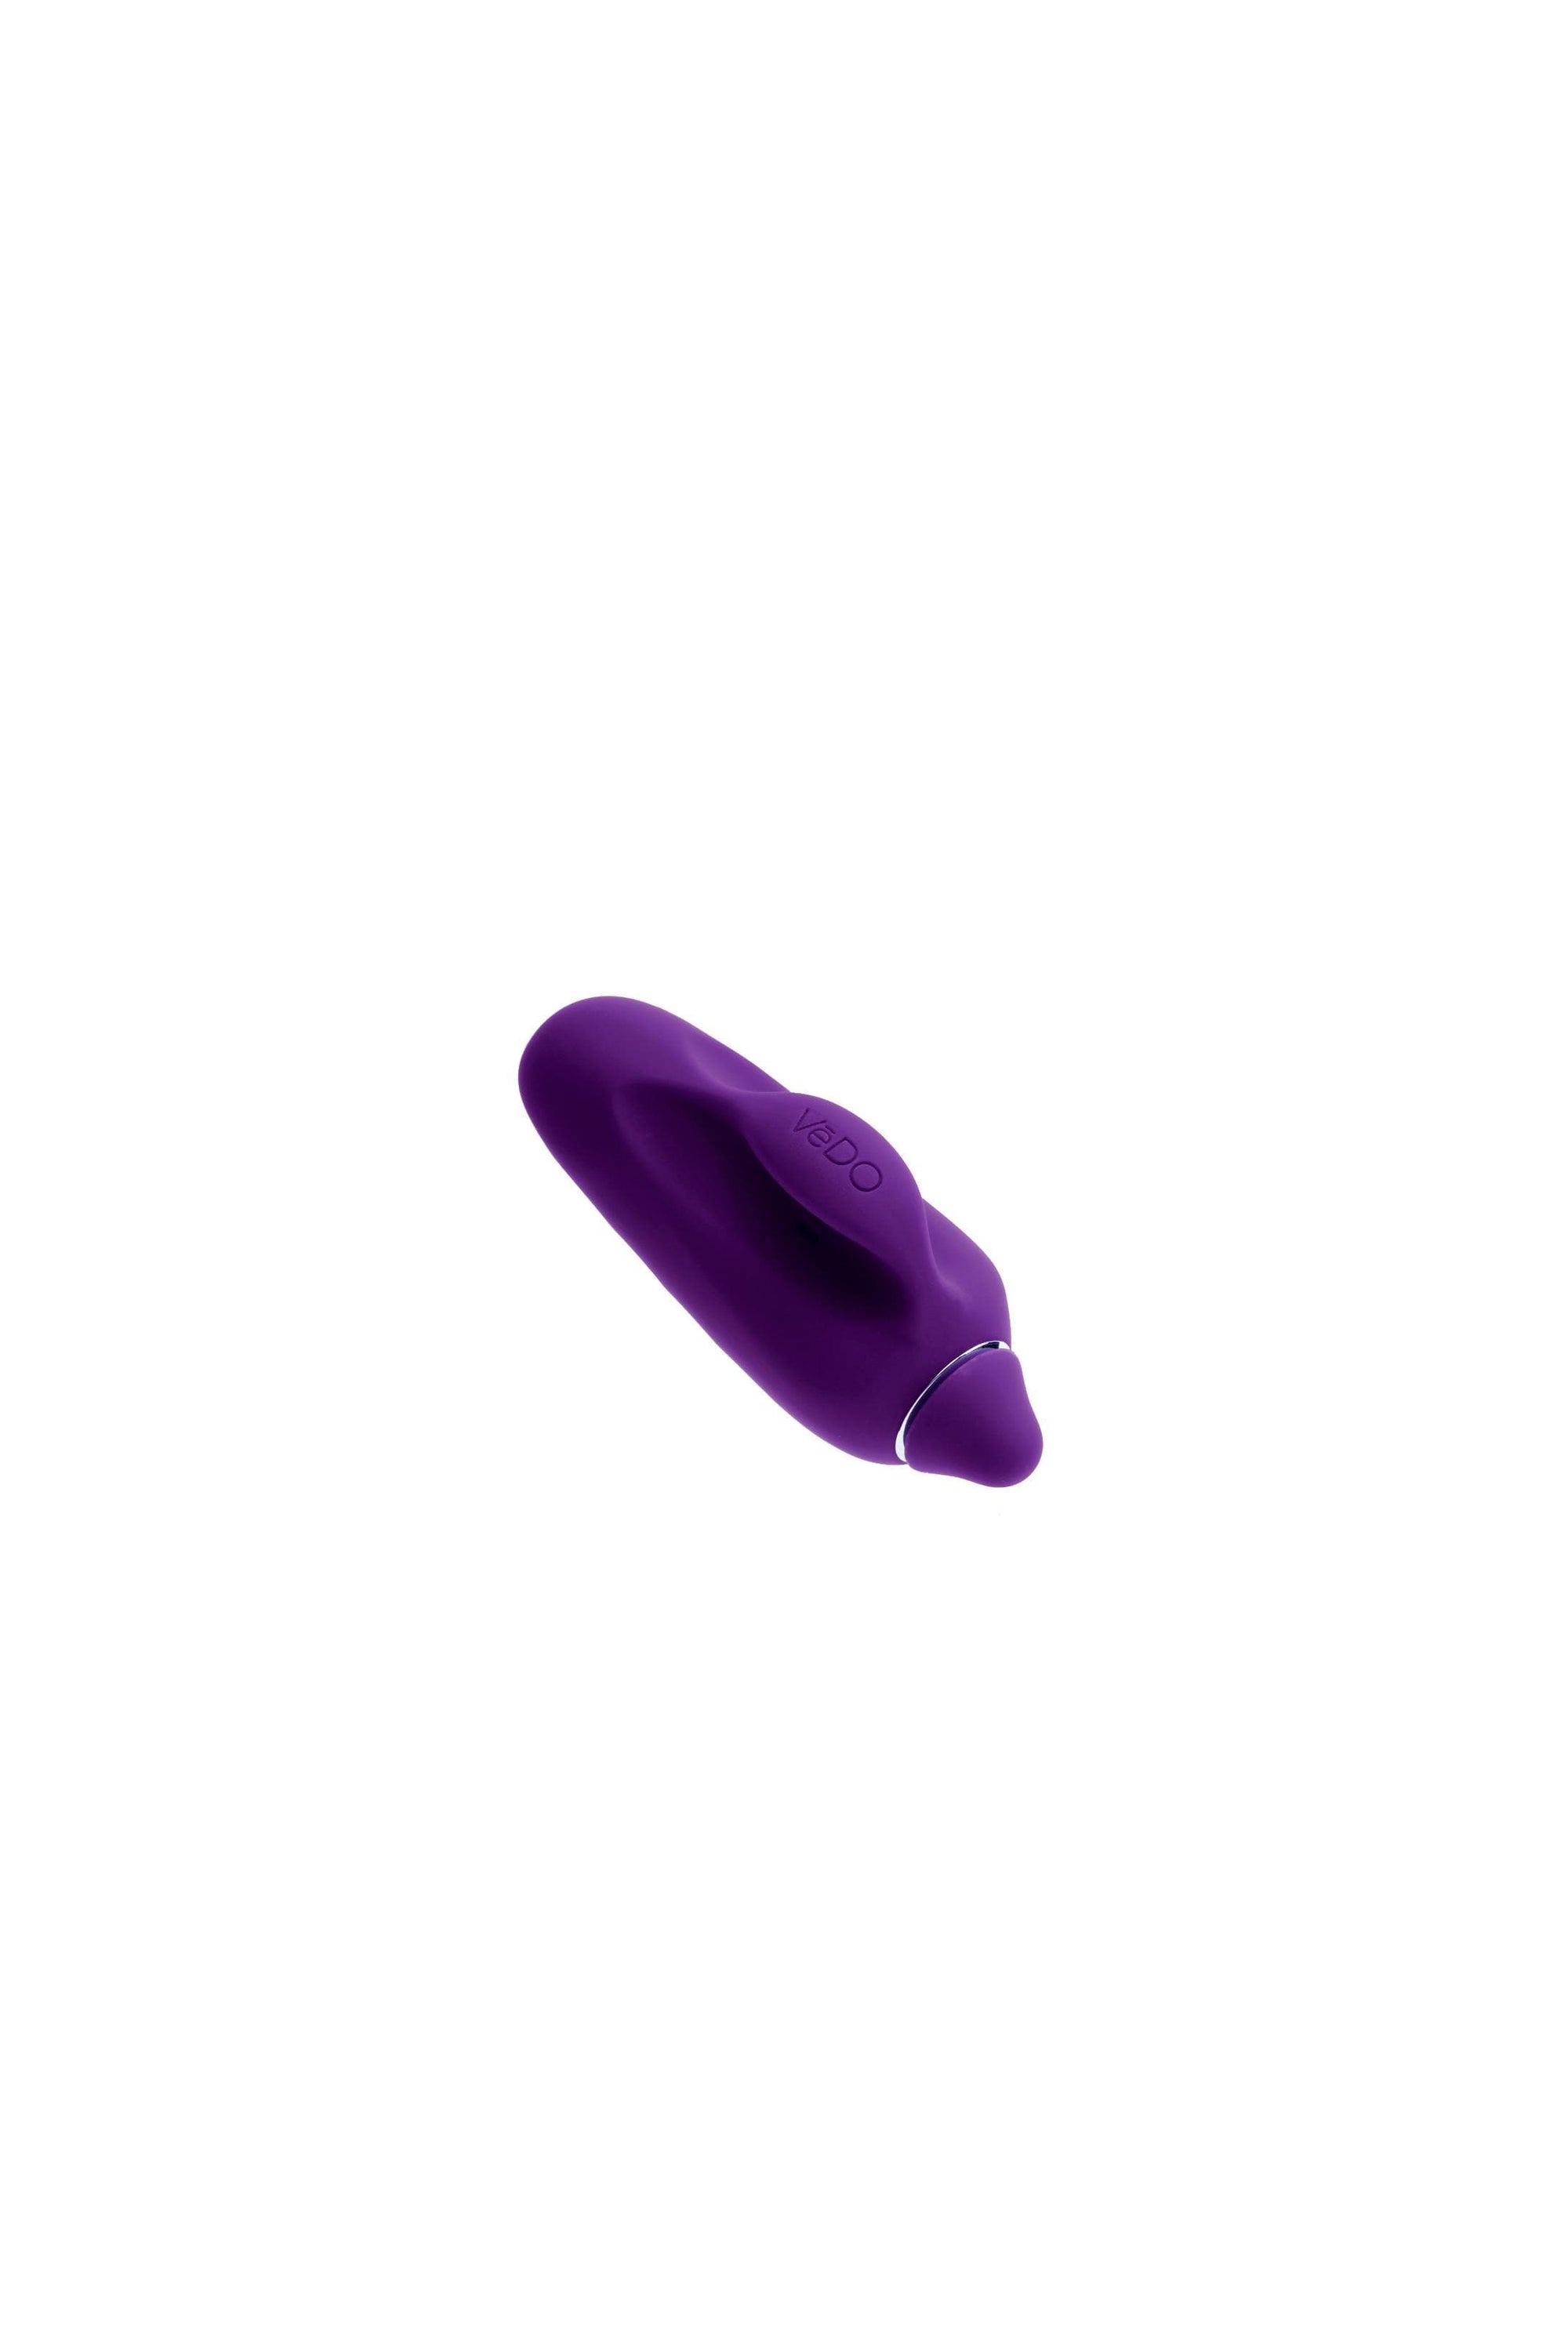 vivi rechargeable finger vibe purple